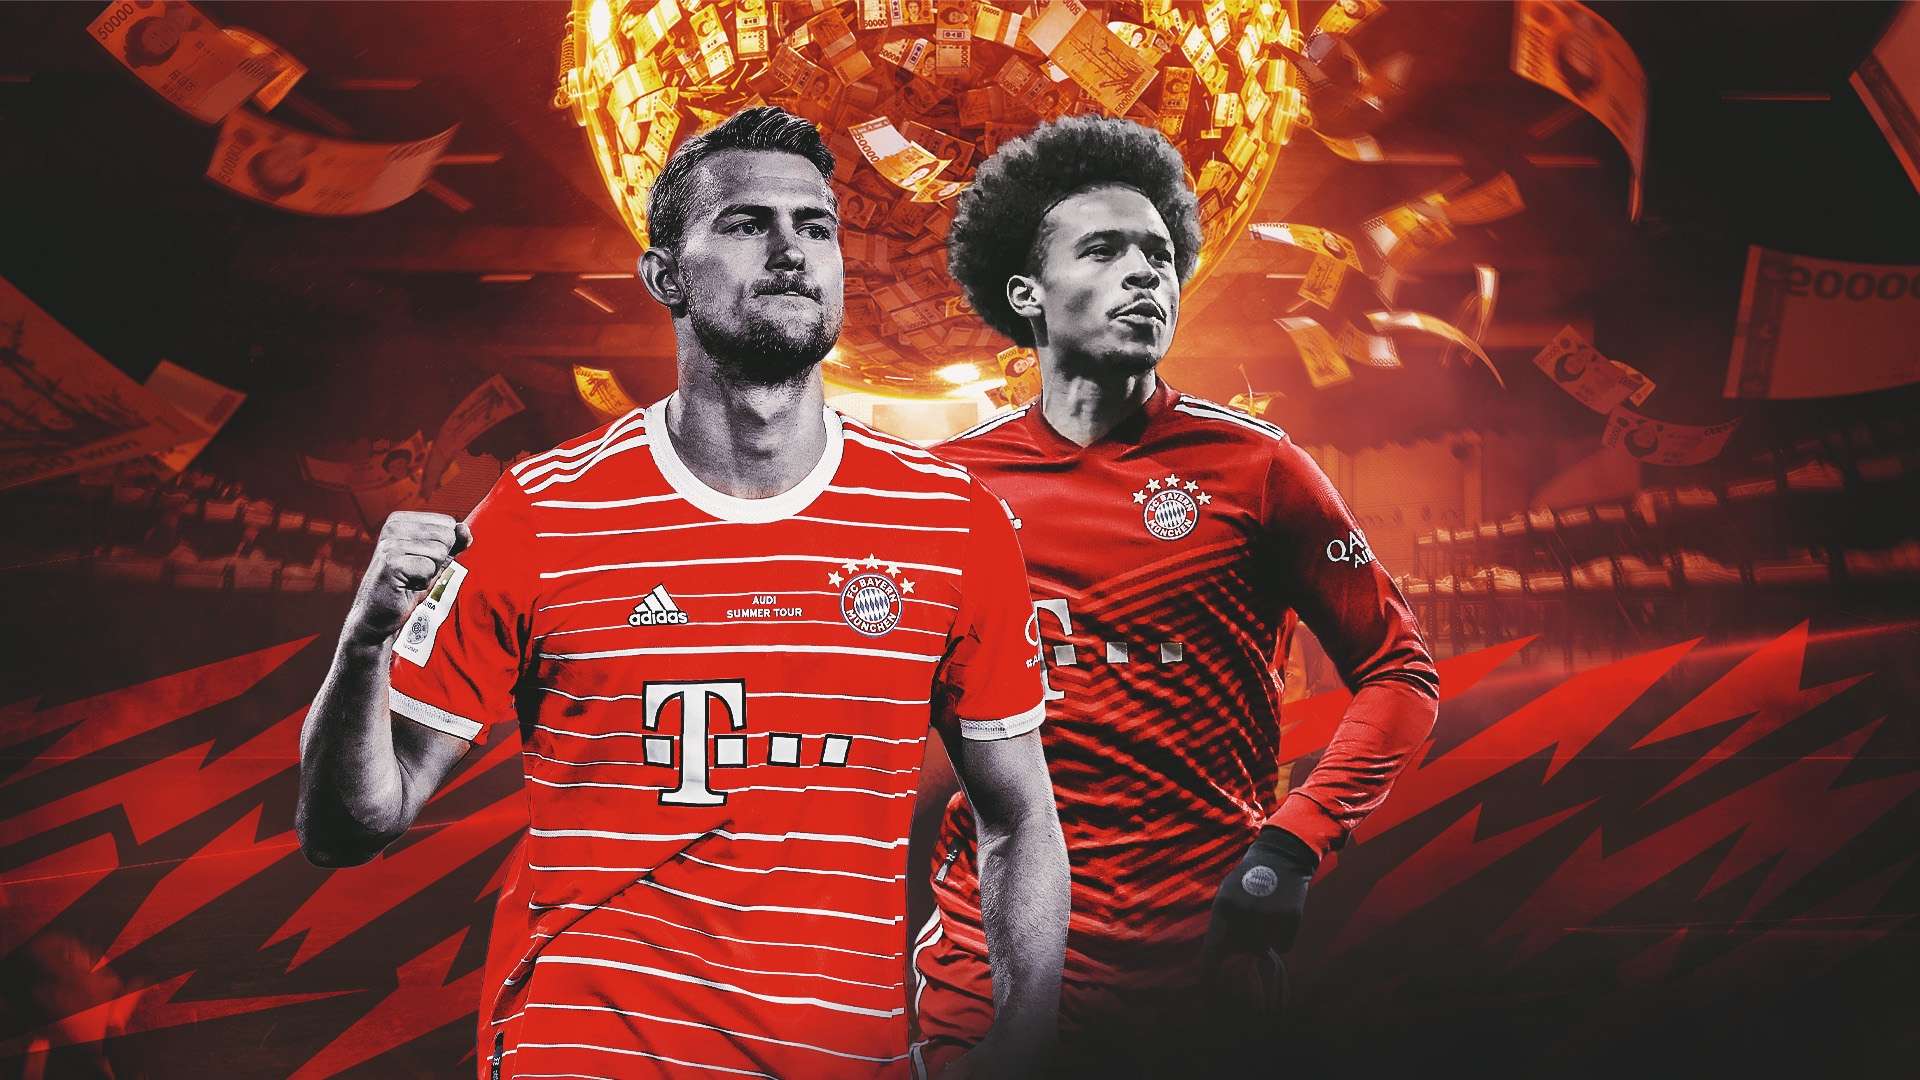 Bayern Munich stars De Ligt and Sane